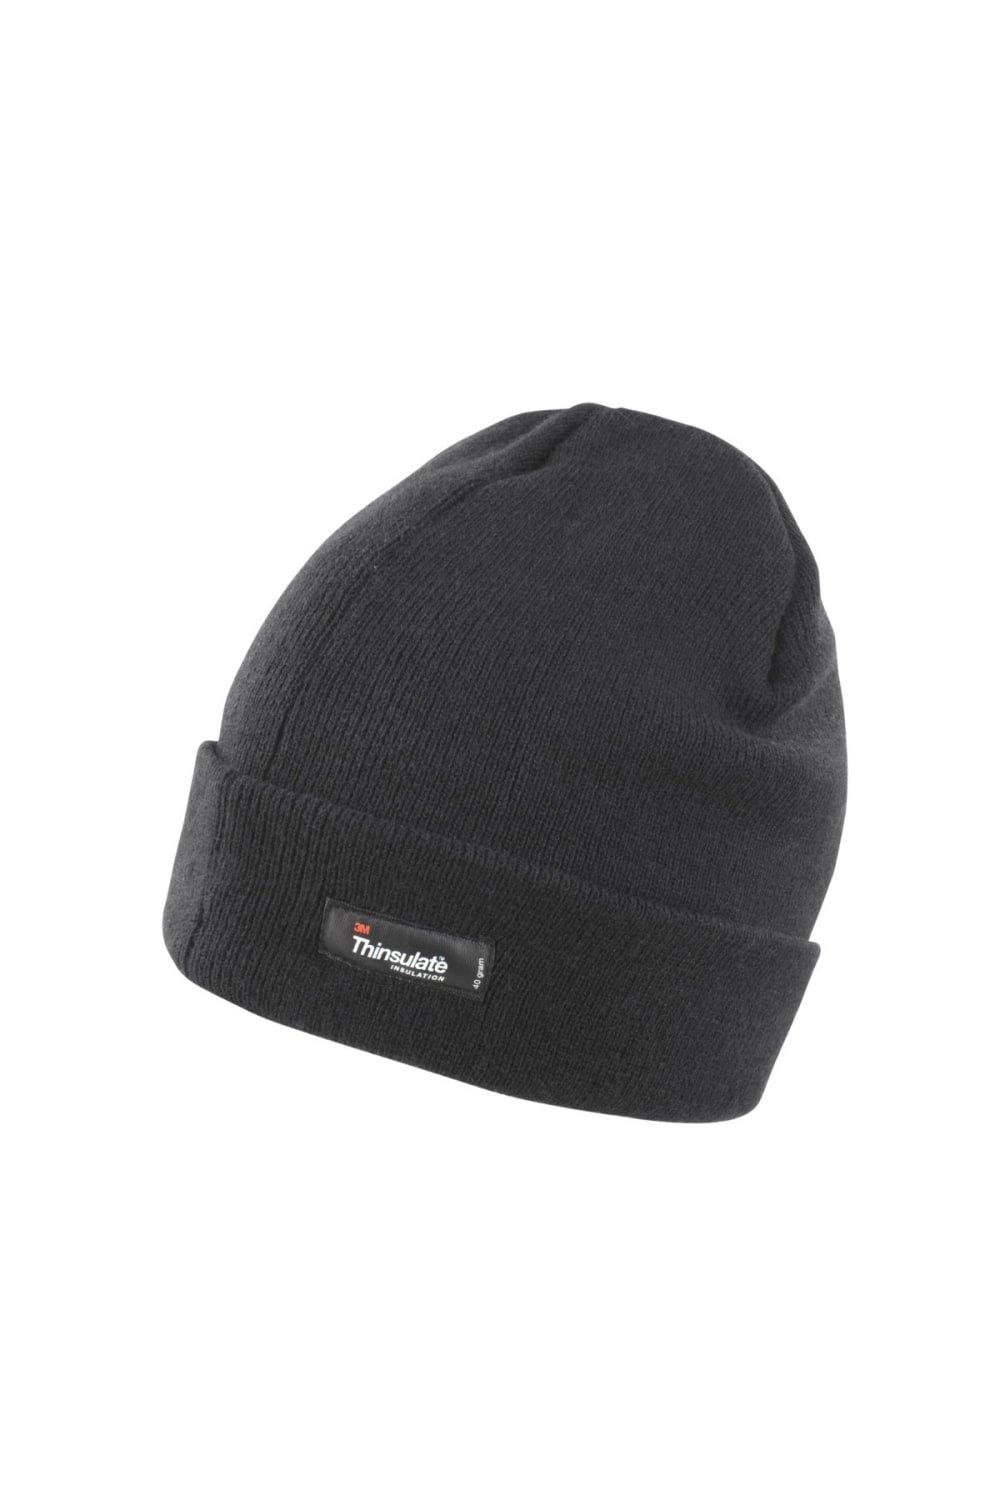 Легкая термозимняя шапка Thinsulate (3M, 40 г) (2 шт. в упаковке) Result, черный фото